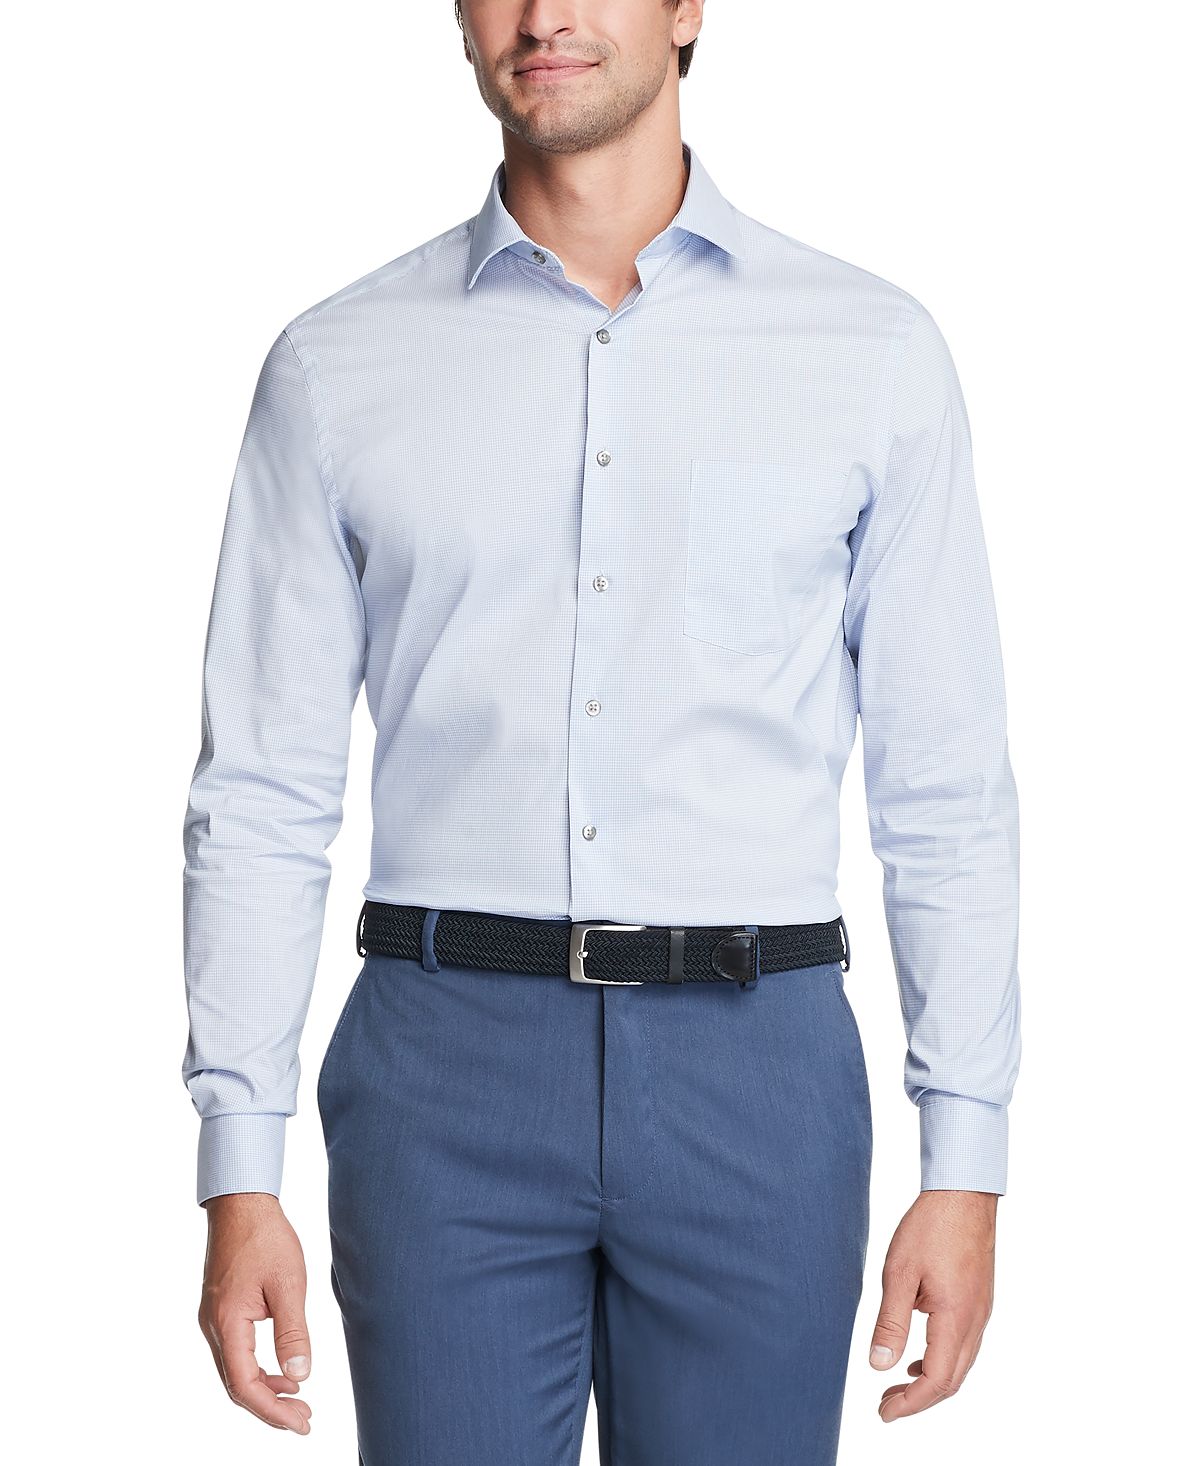 Мужская классическая рубашка стрейч стандартного кроя Stain Shield Van Heusen